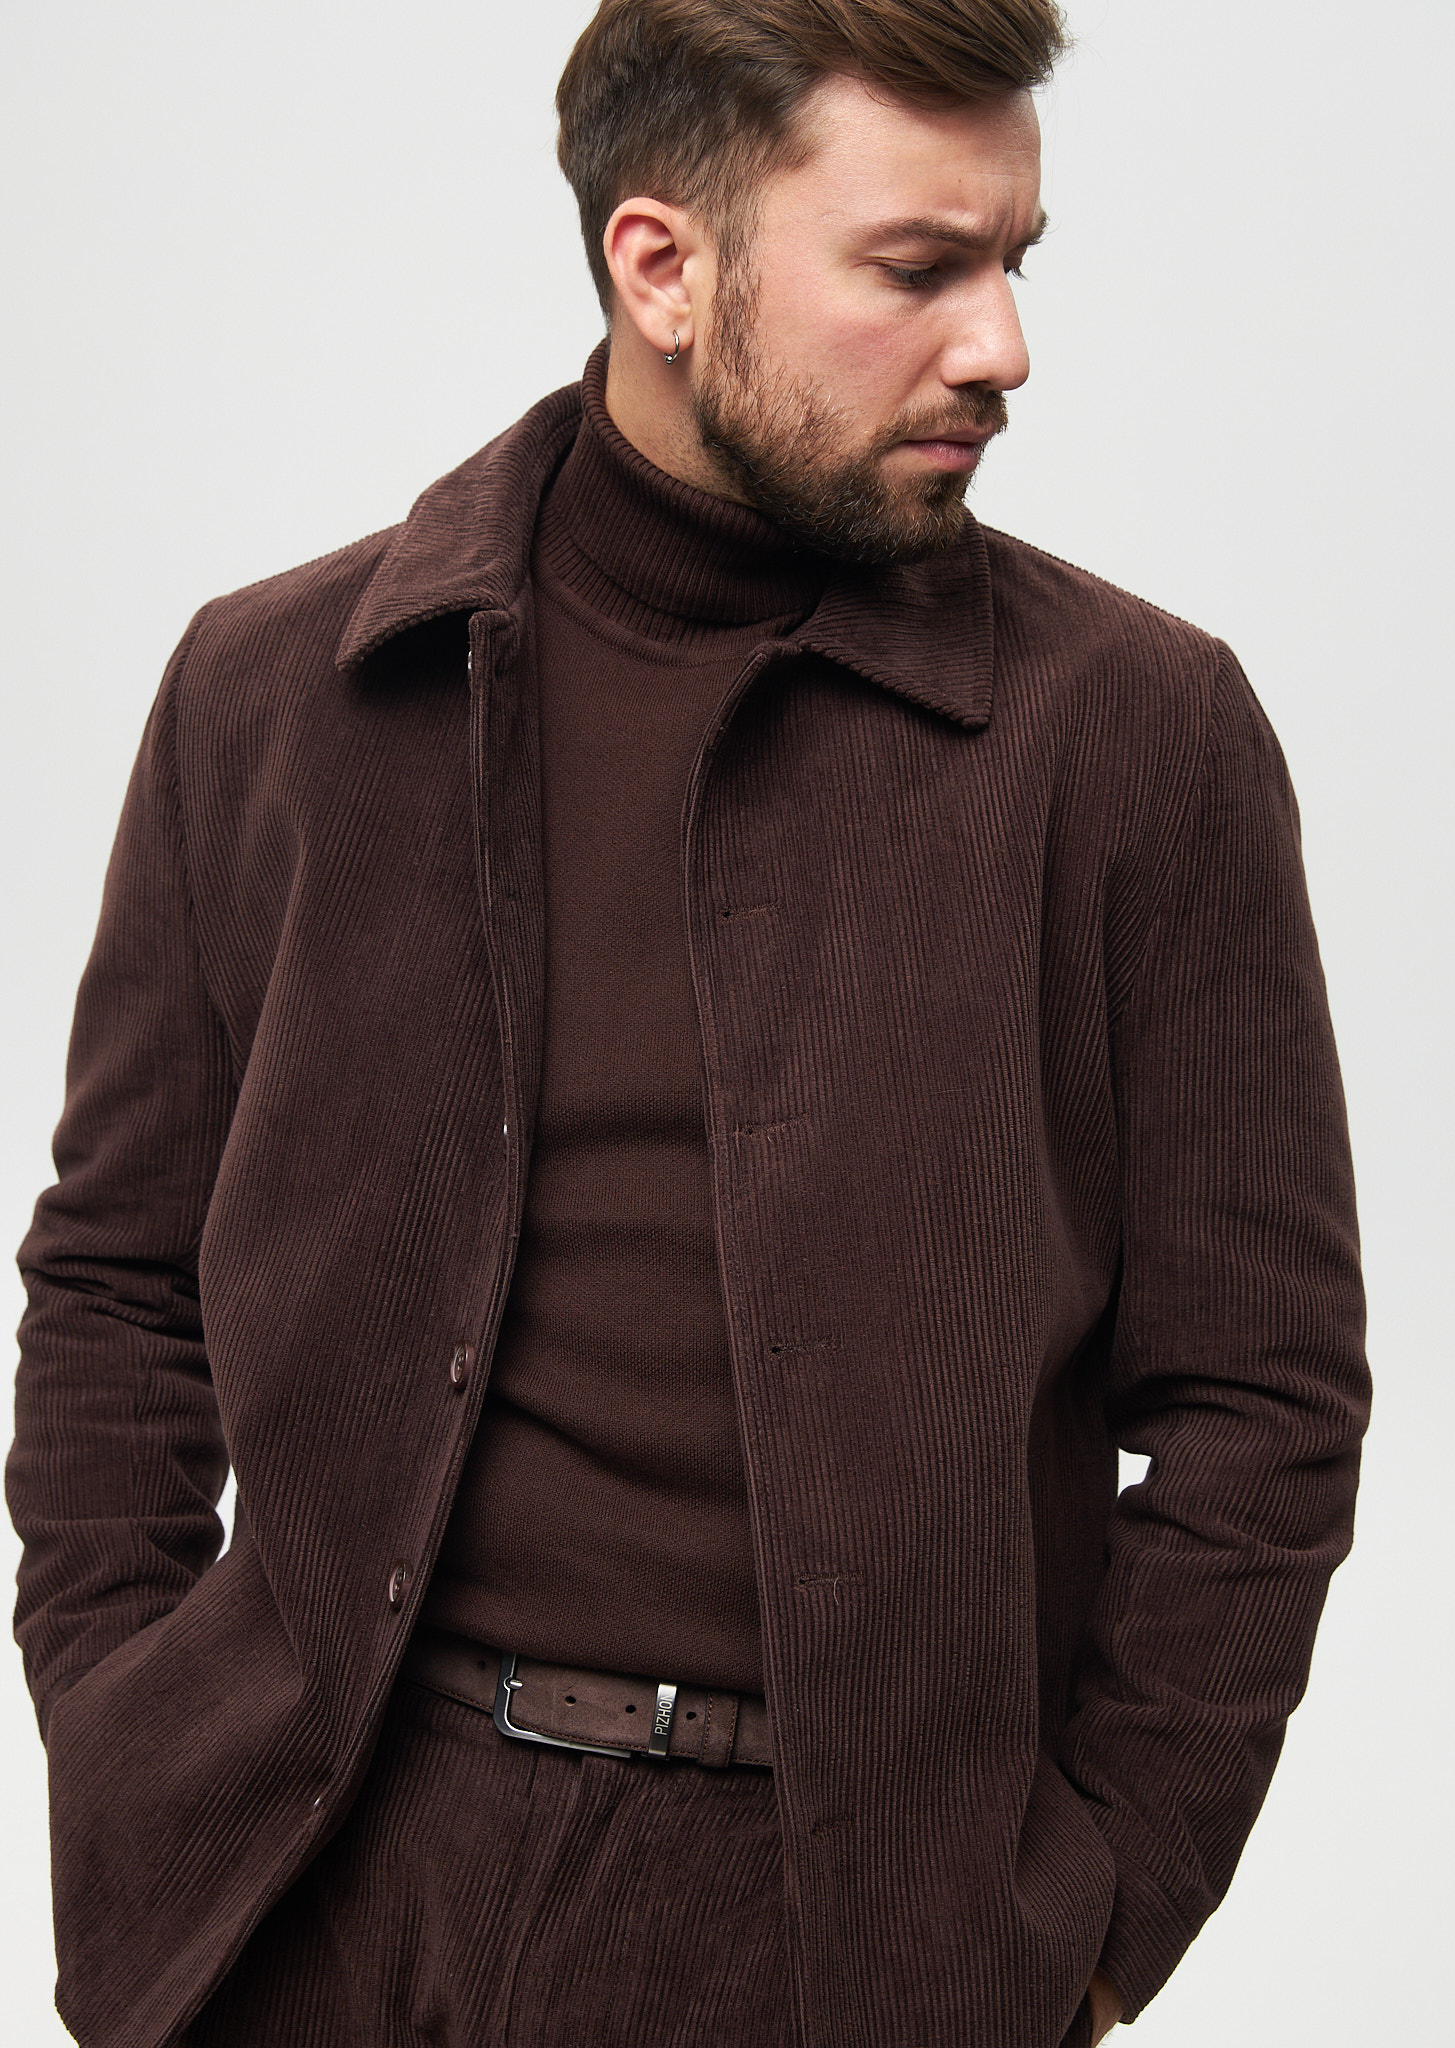 Куртка-рубашка вельветовая коричневая (50)